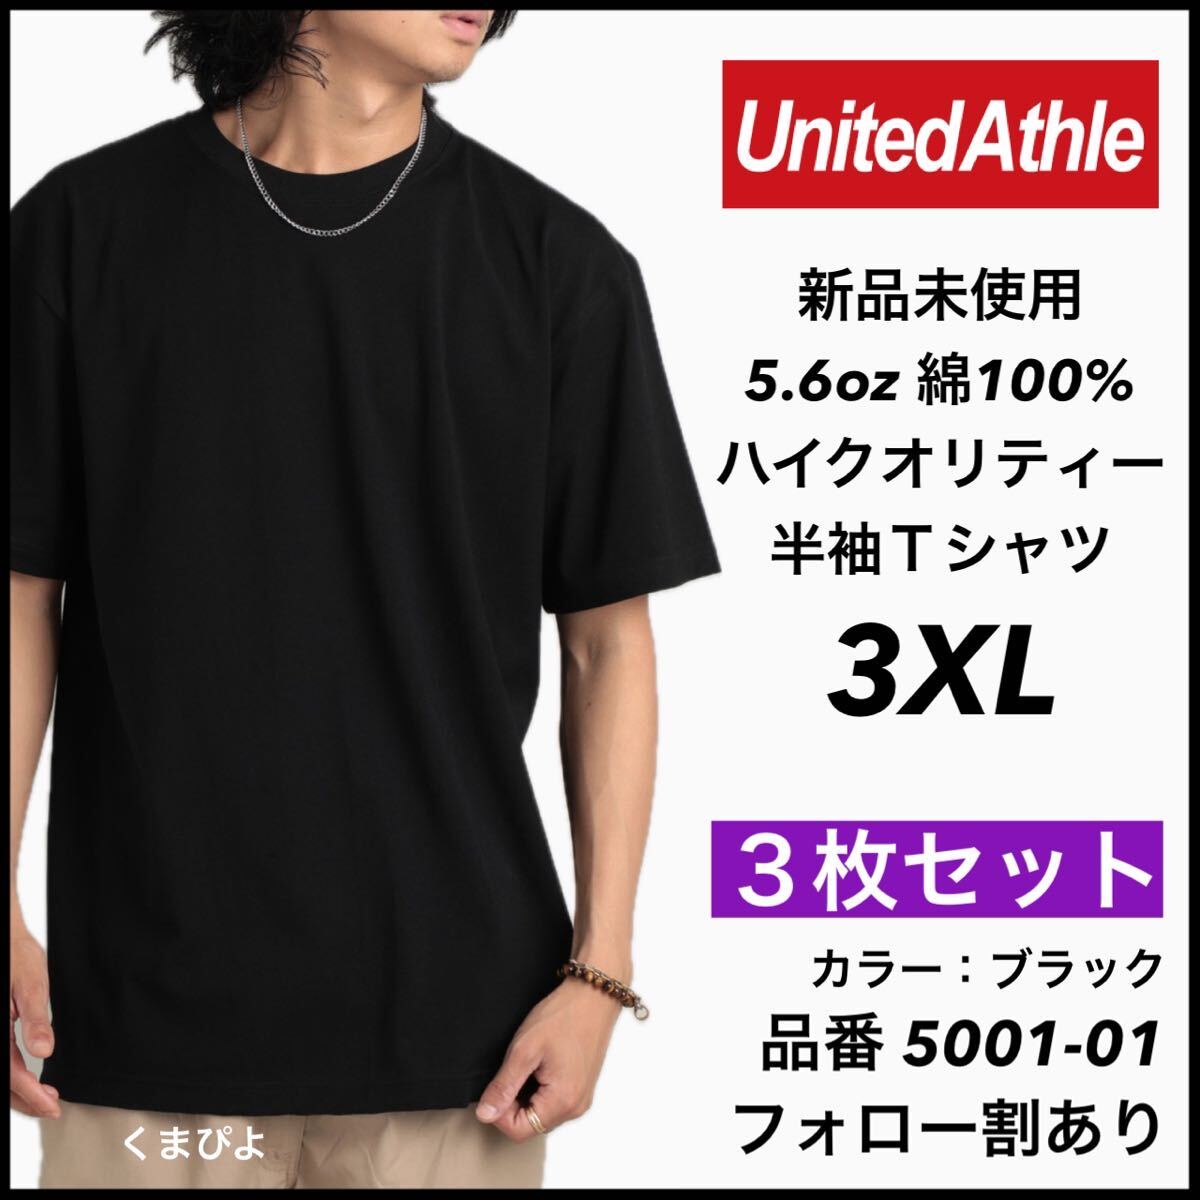 新品未使用 ユナイテッドアスレ 5.6oz 無地 半袖Tシャツ 黒 ブラック 3XL サイズ ３枚セット United Athle_画像1